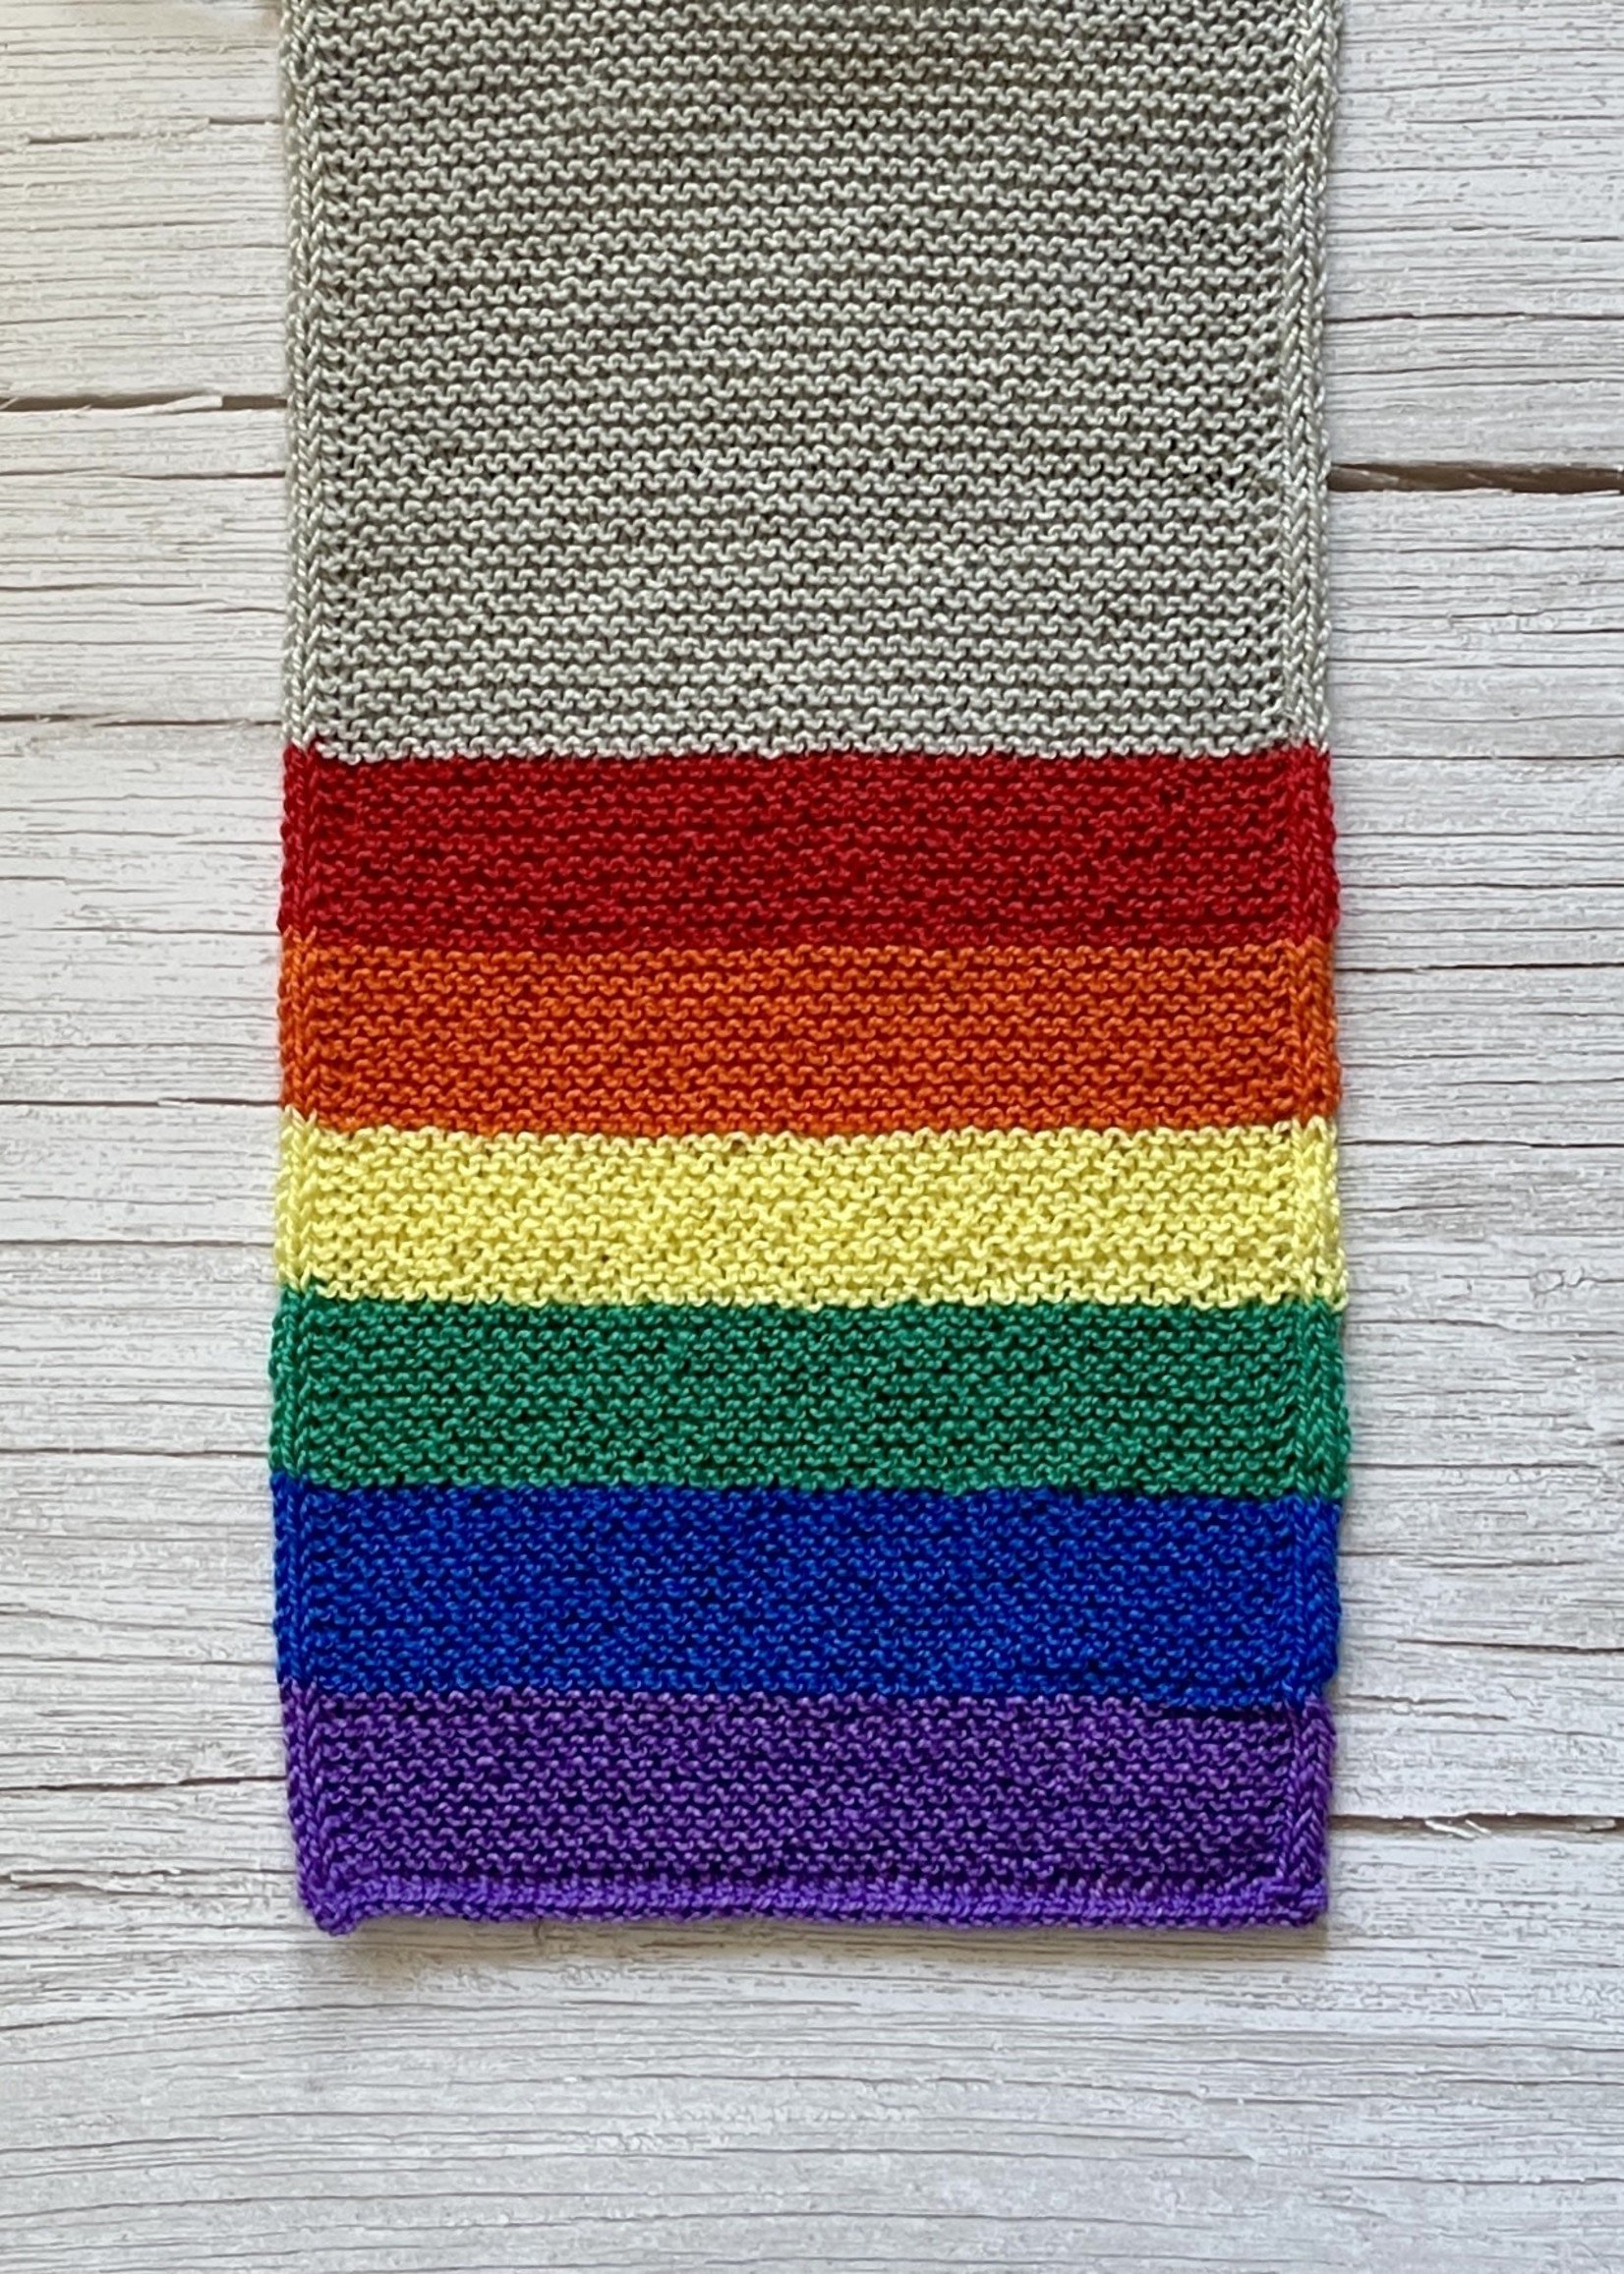 gay pride rainbow scarf